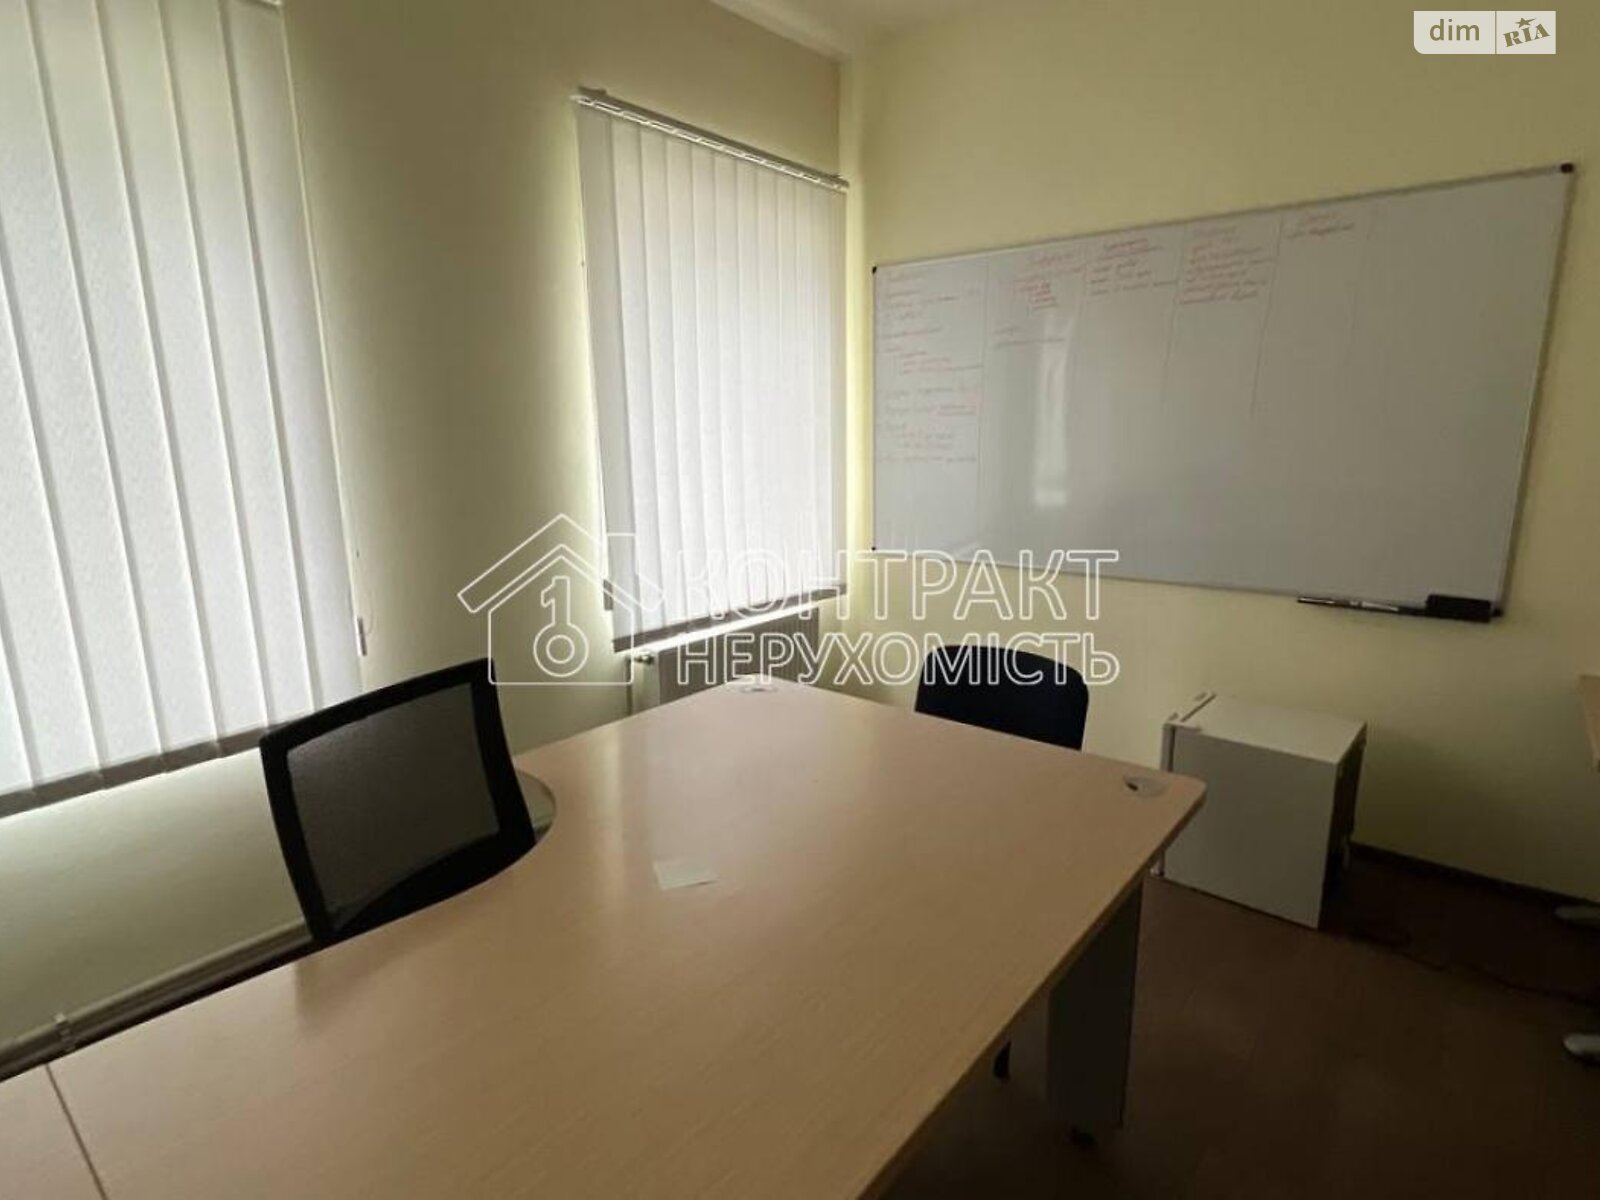 Аренда офисного помещения в Харькове, Ващенковский въезд, помещений - 1, этаж - 2 фото 1